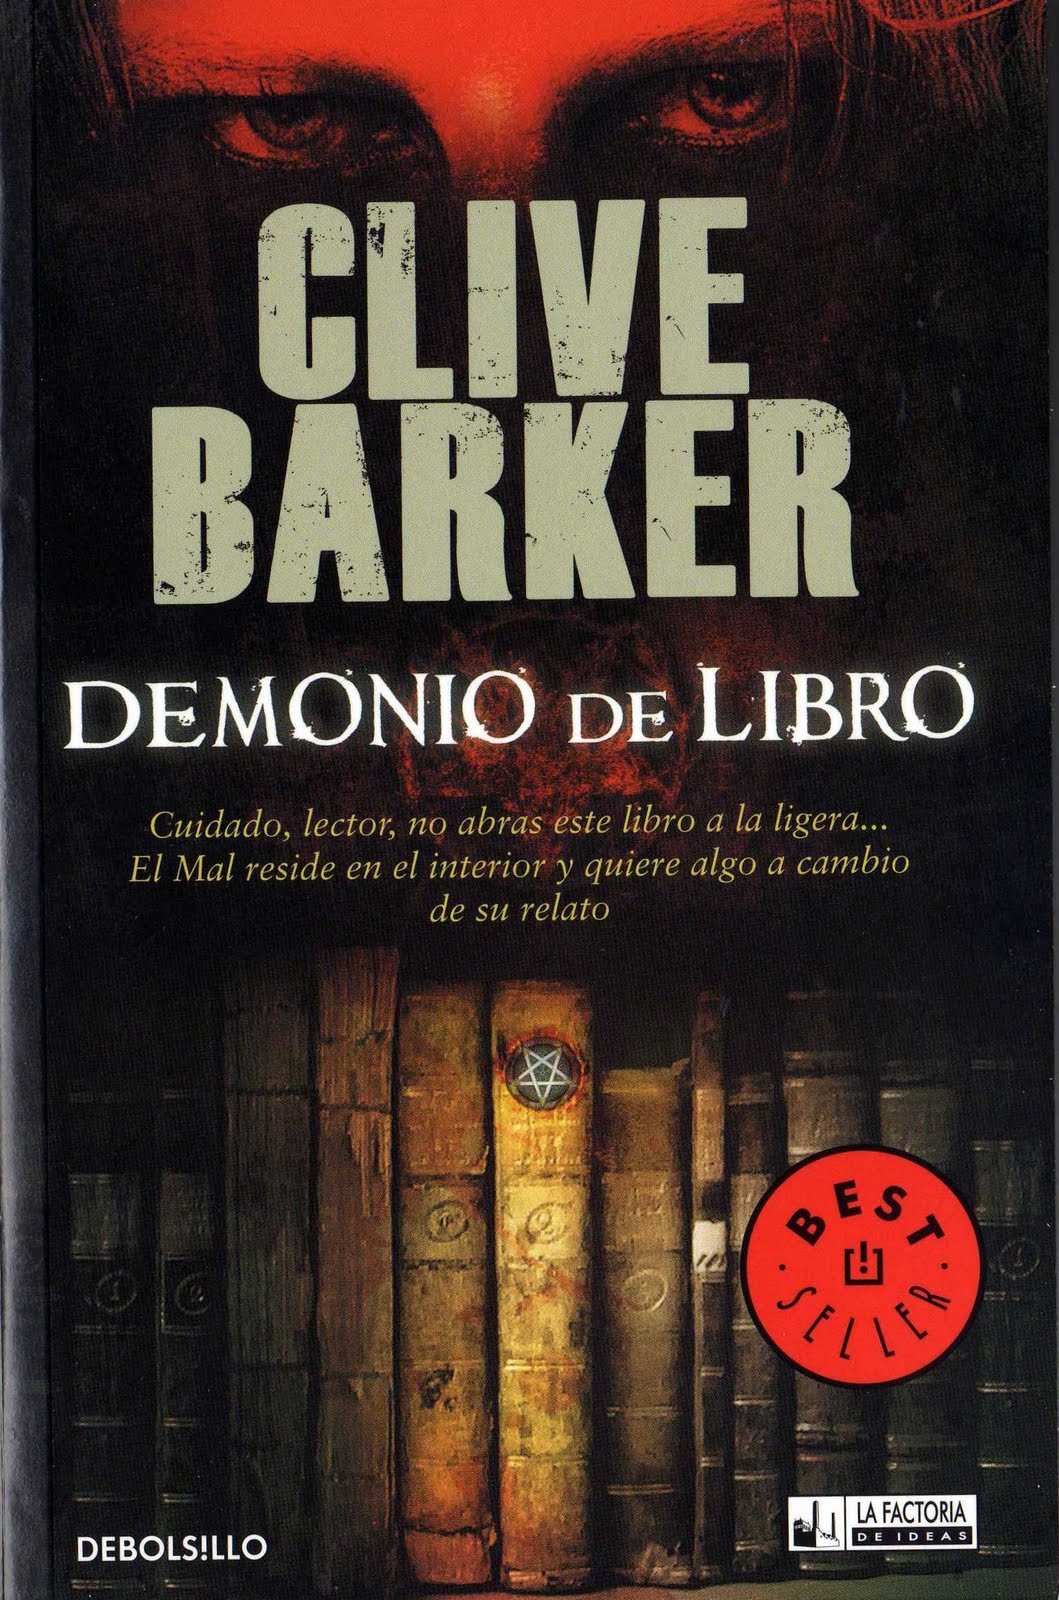 Libro de audio Demonio de libro – Clive Barker